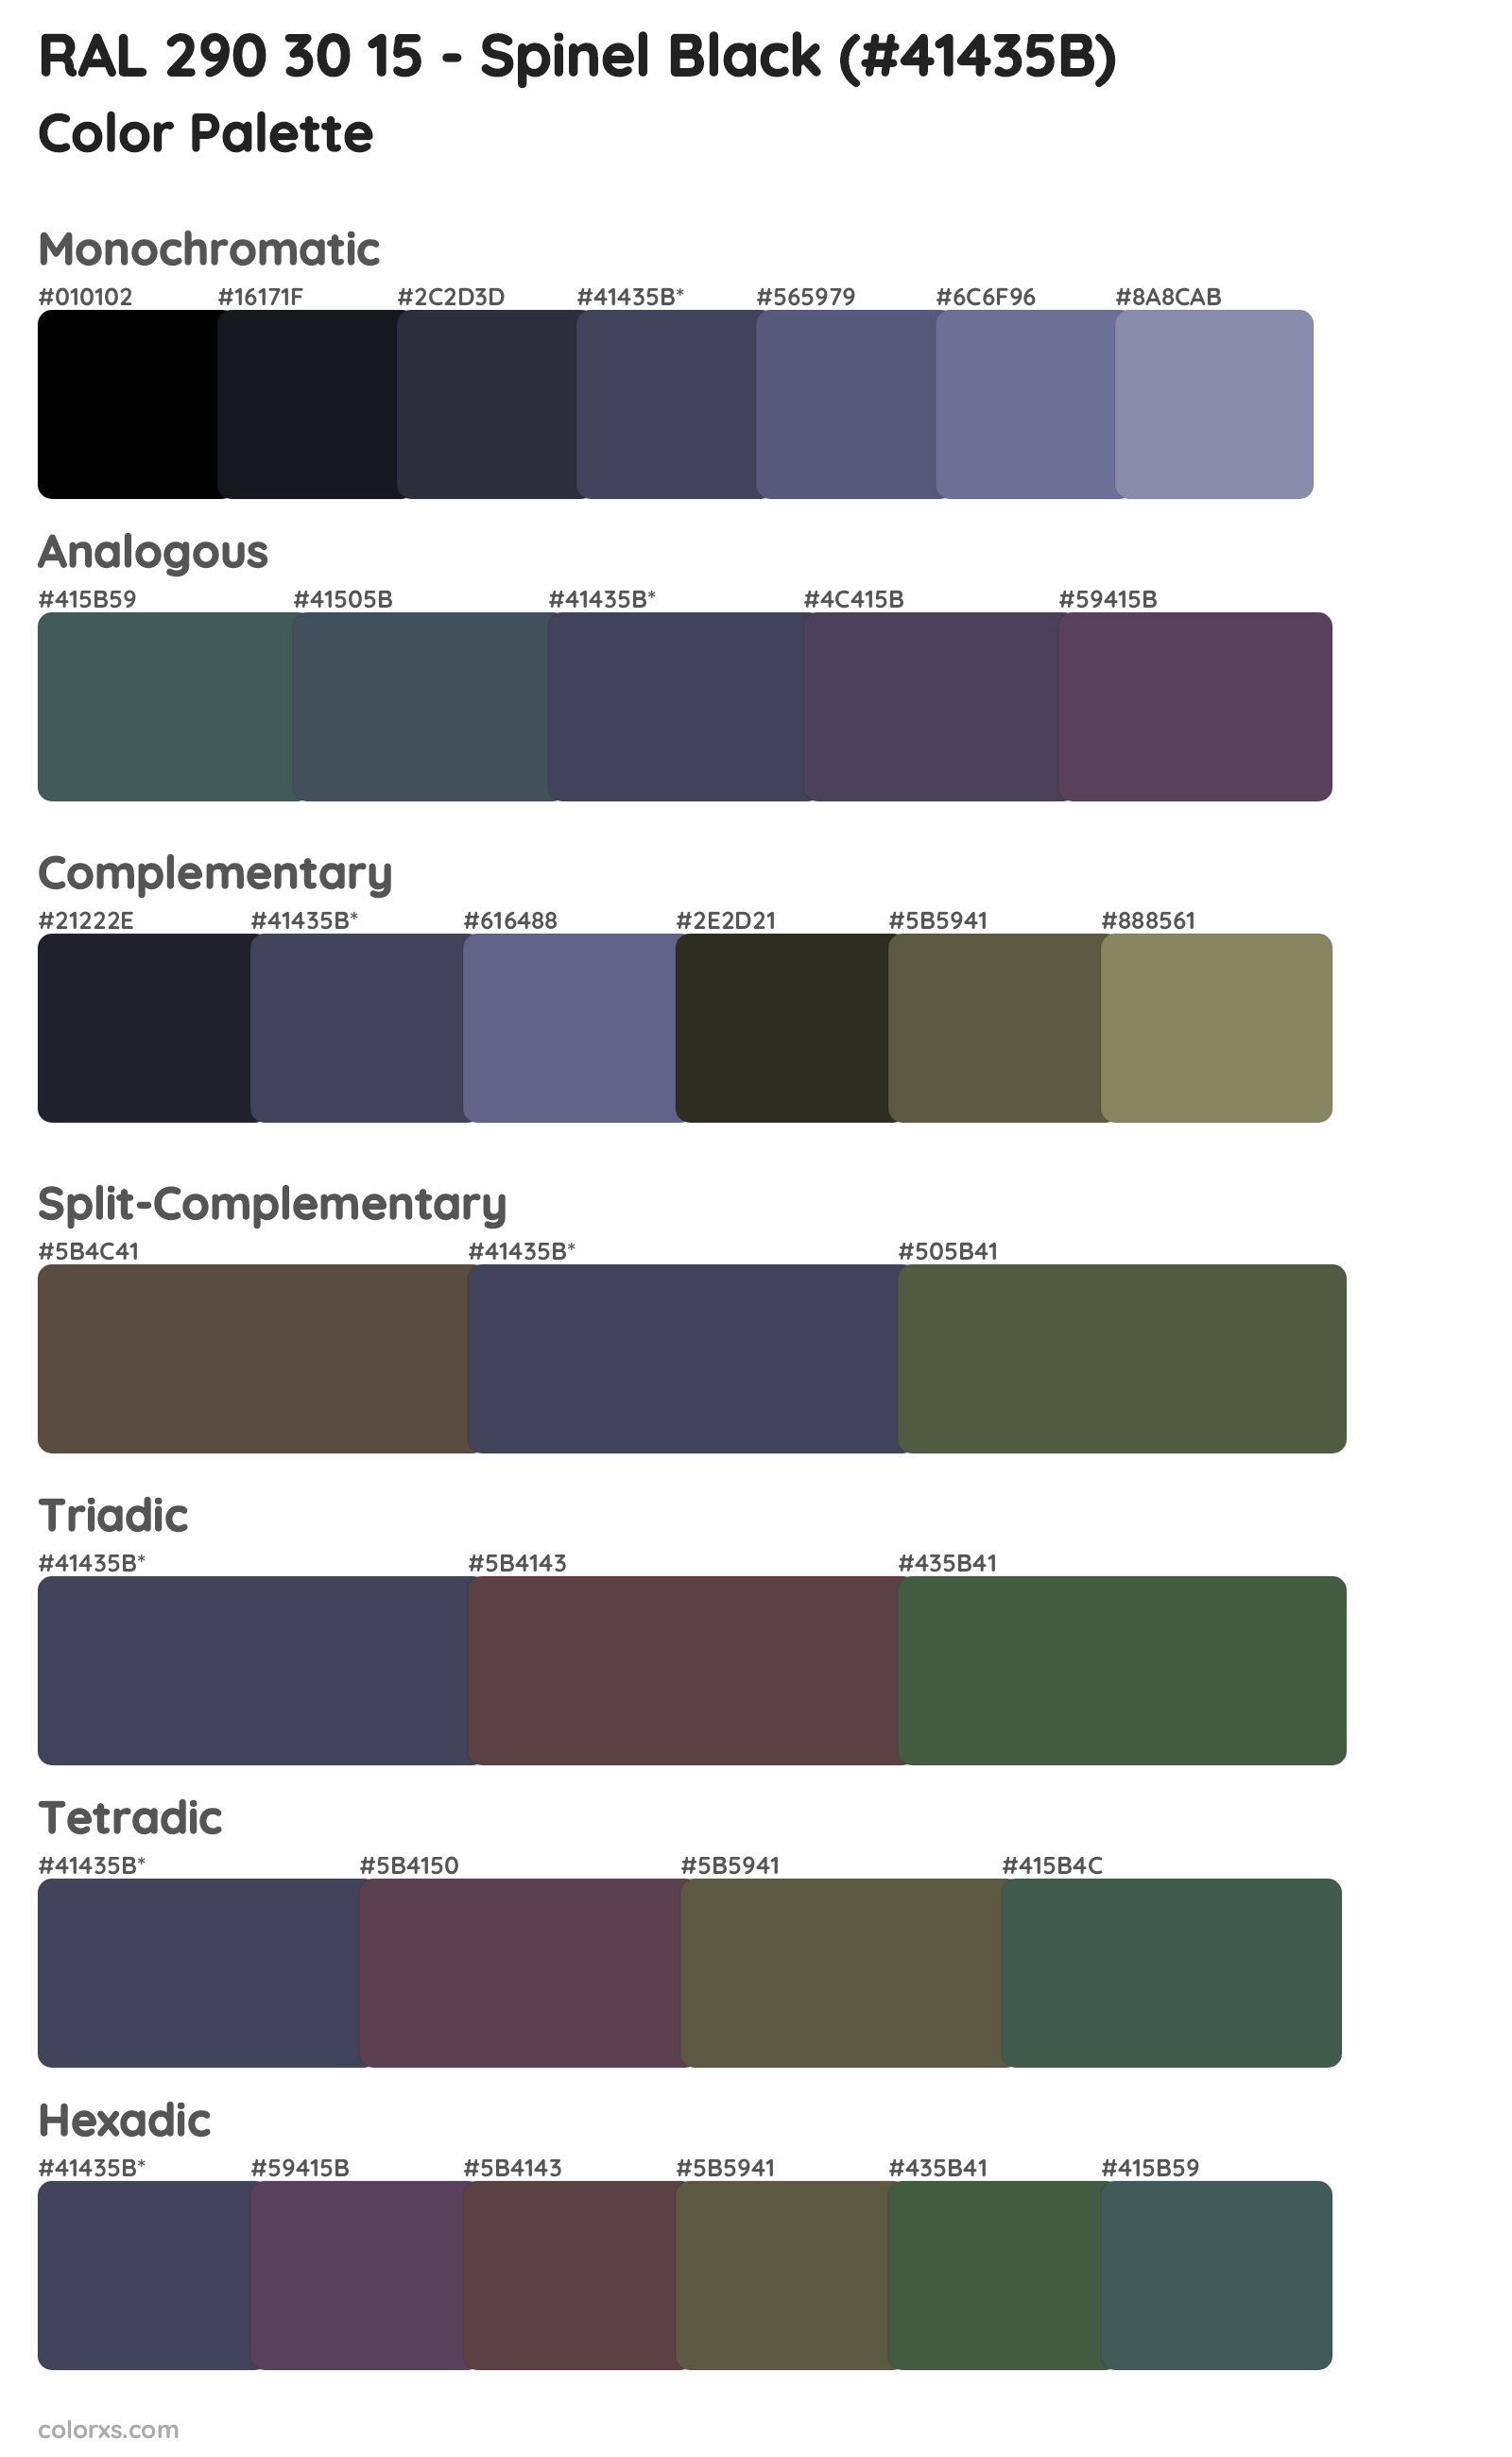 RAL 290 30 15 - Spinel Black Color Scheme Palettes